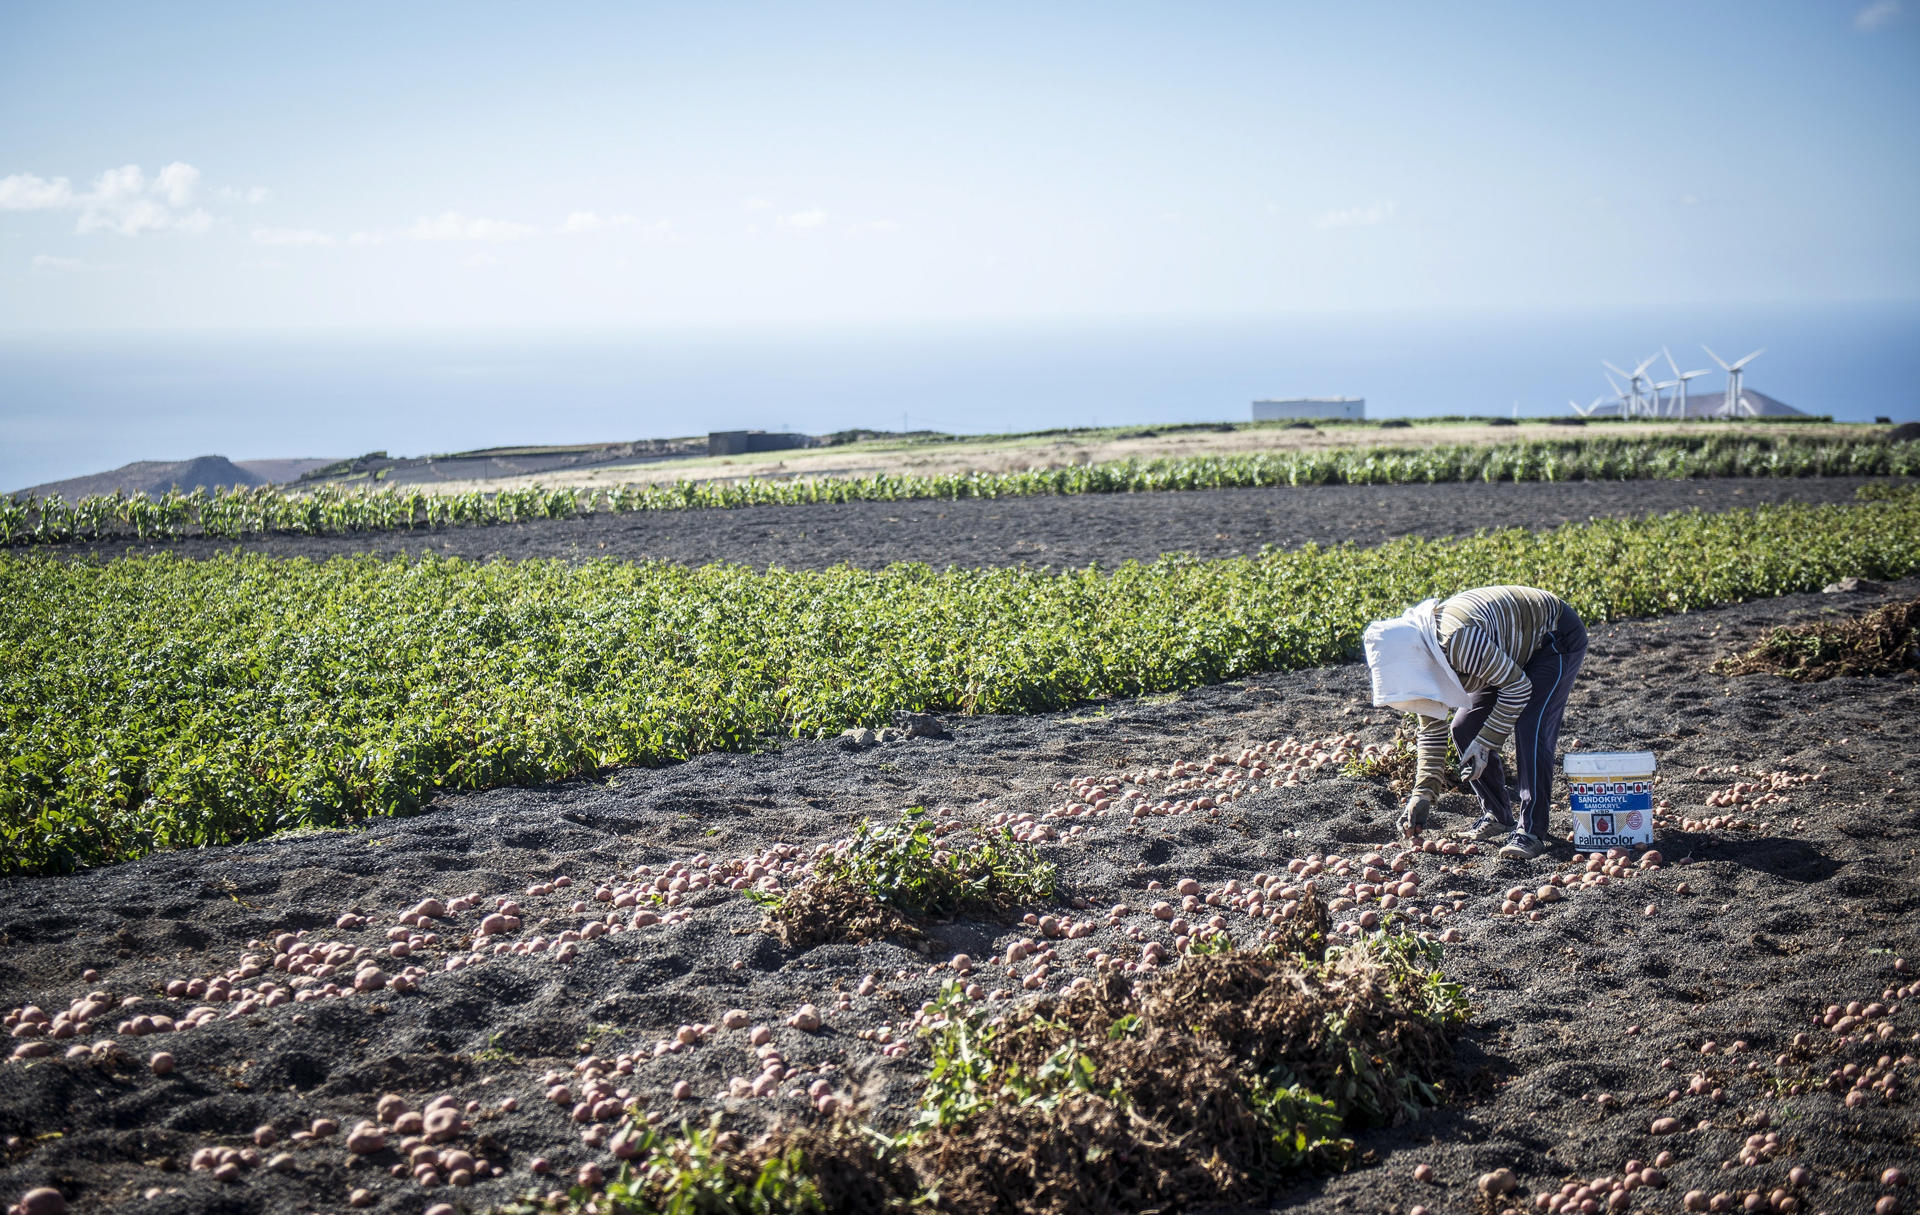 Foto de archivo de un cultivos de papas en enarenados de picón en Los Valles, Teguise (Lanzarote). EFE/Javier Fuentes